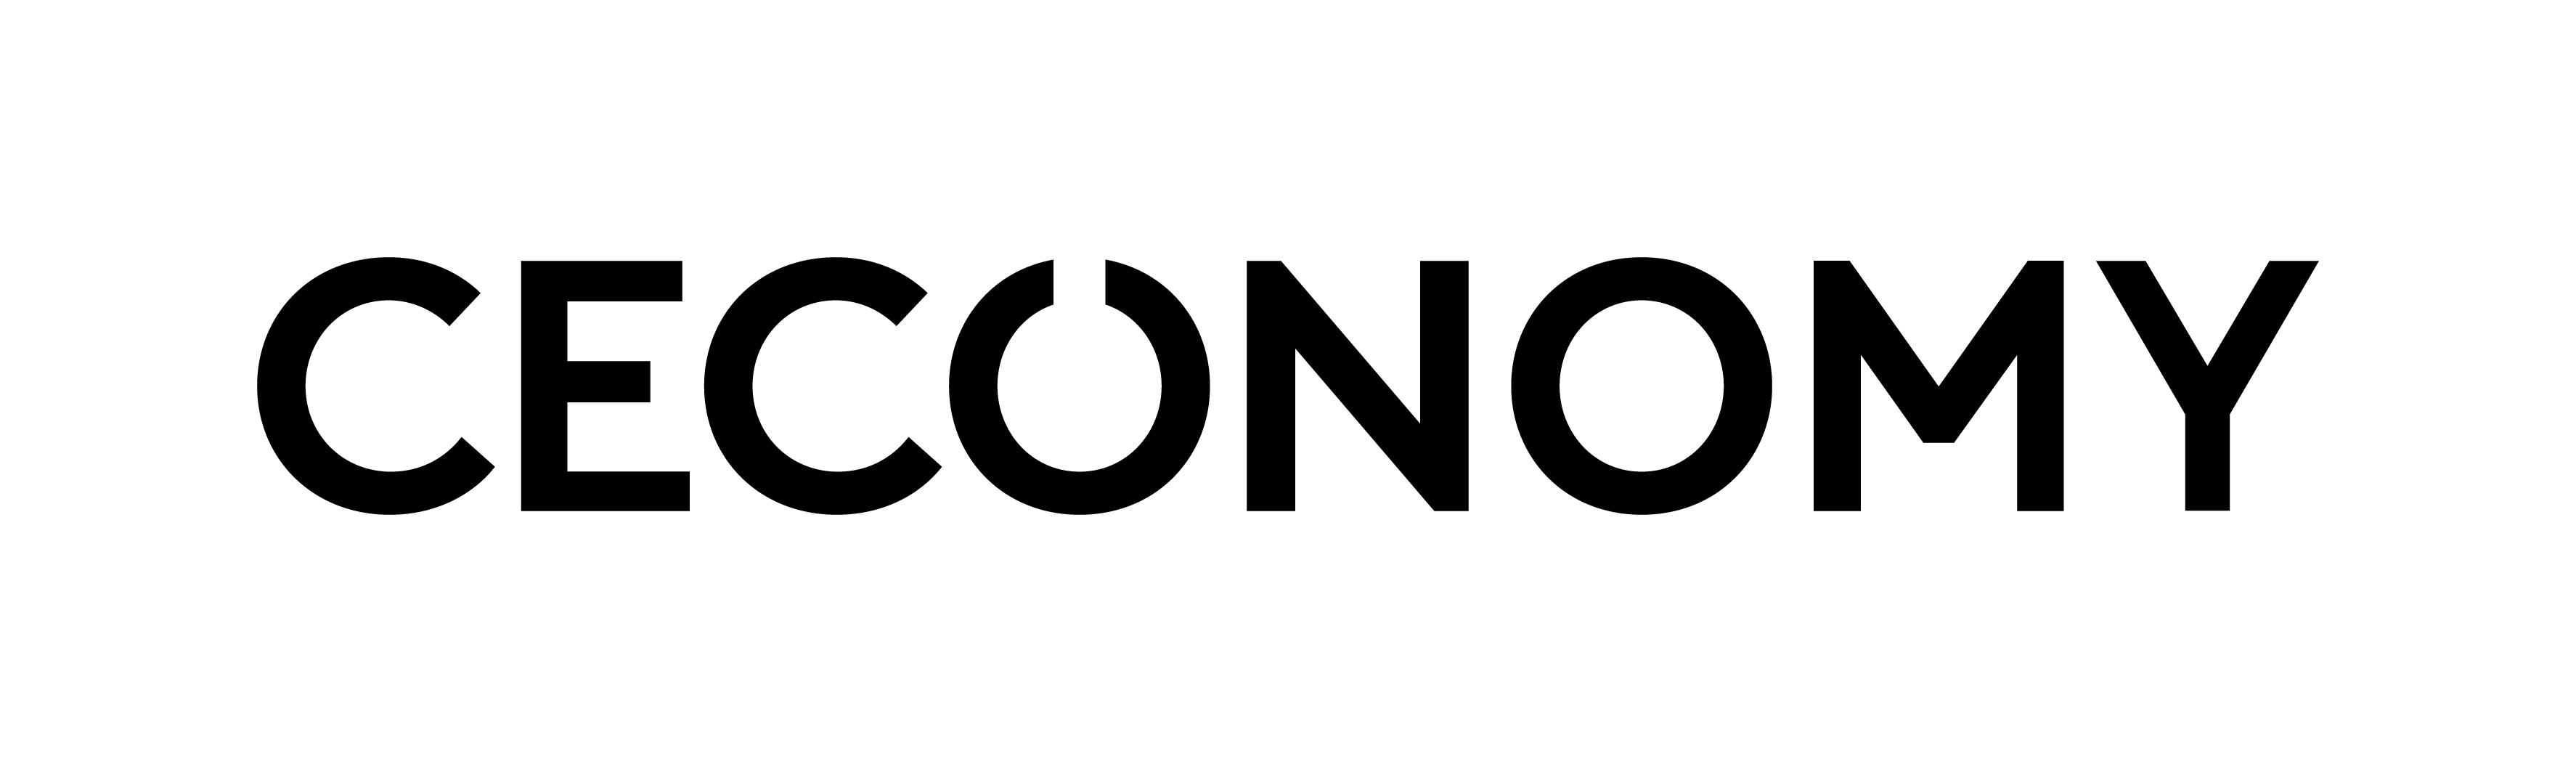 Ceconomy_Logo